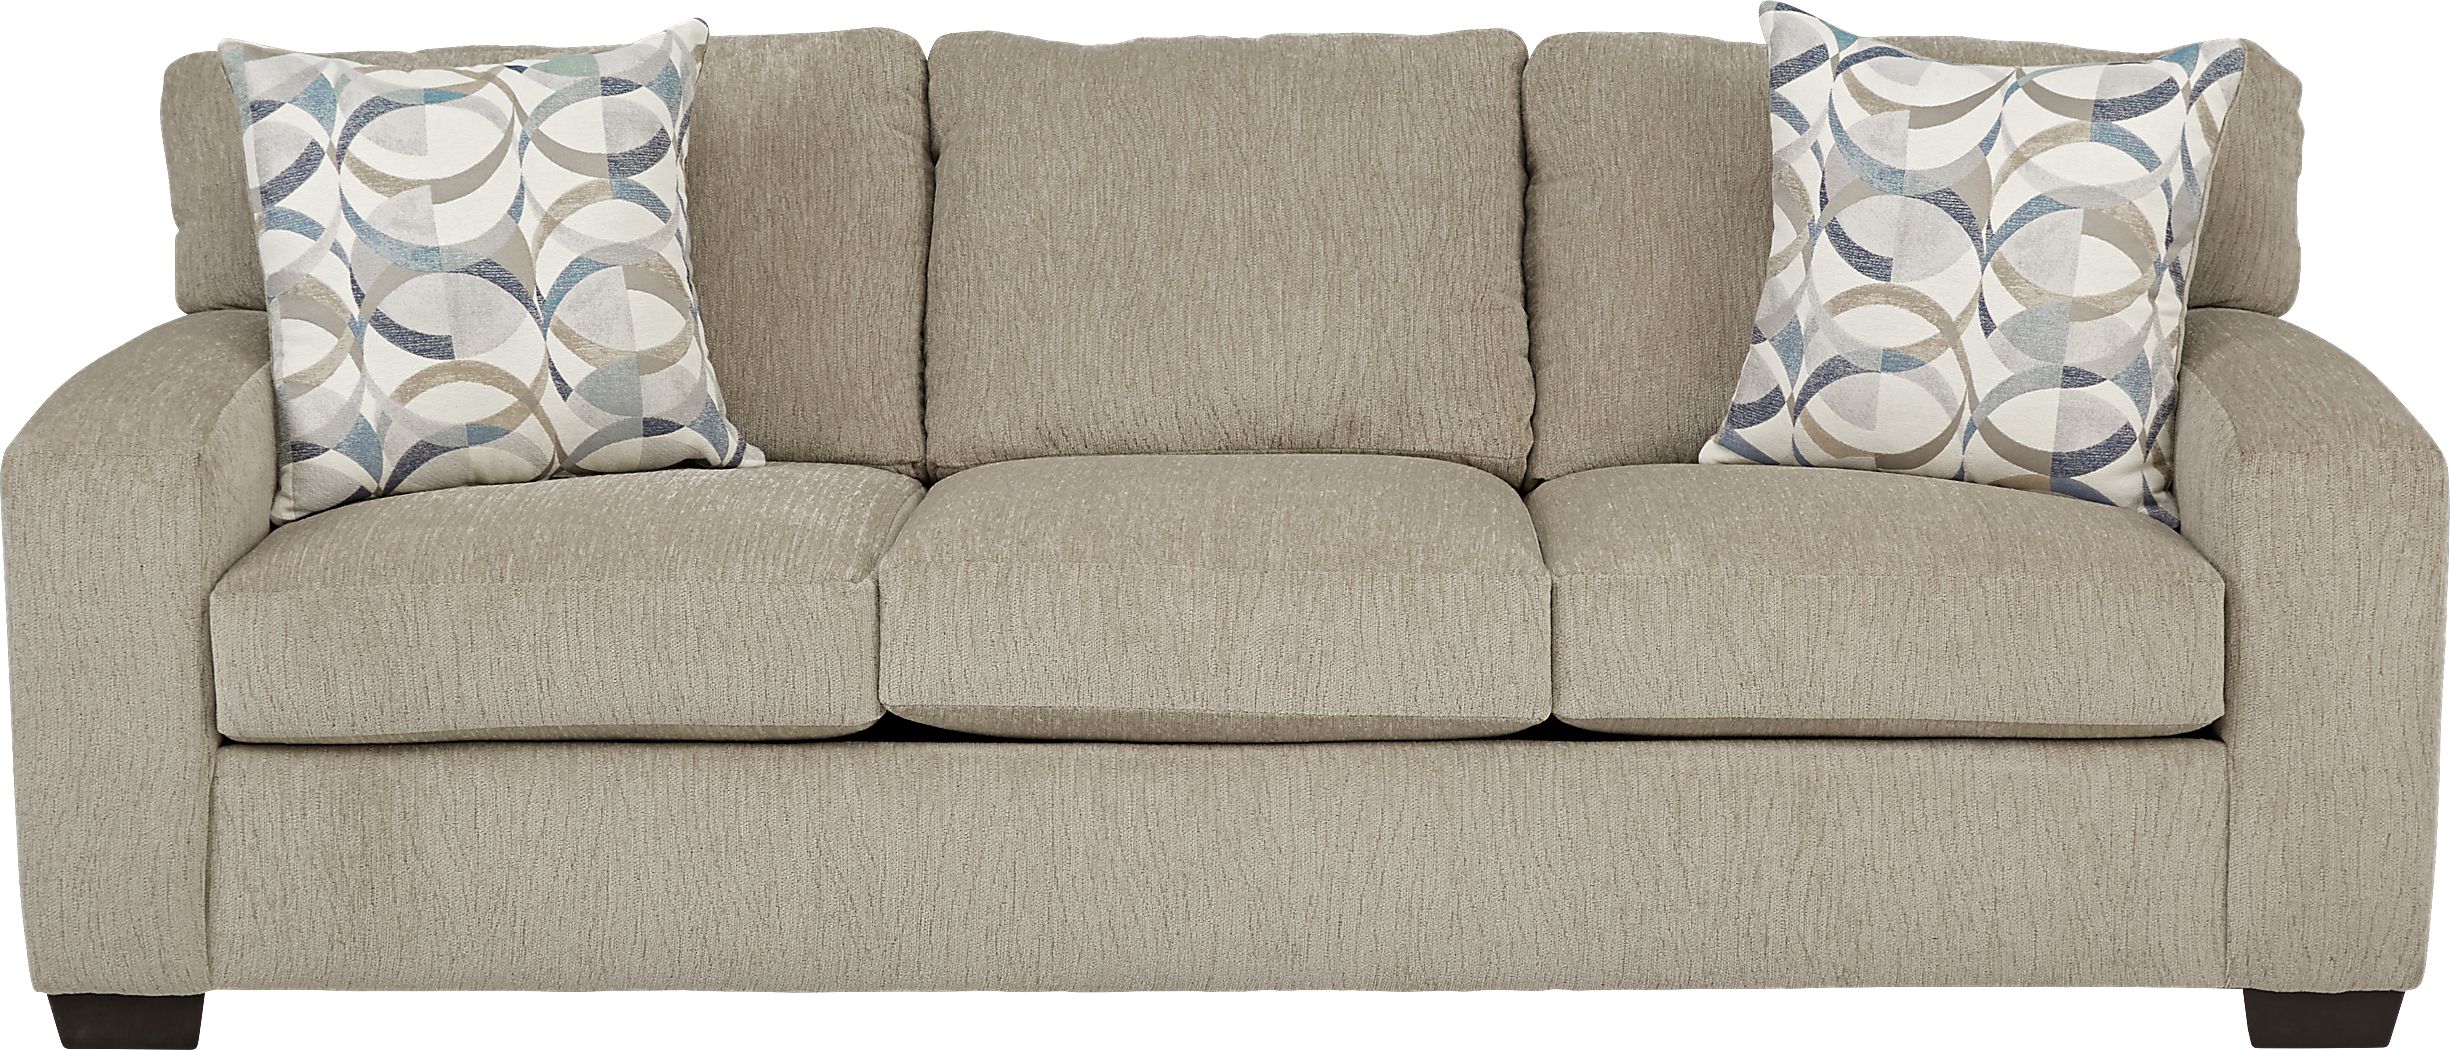 Burke Sandstone Chenille Fabric Sofa